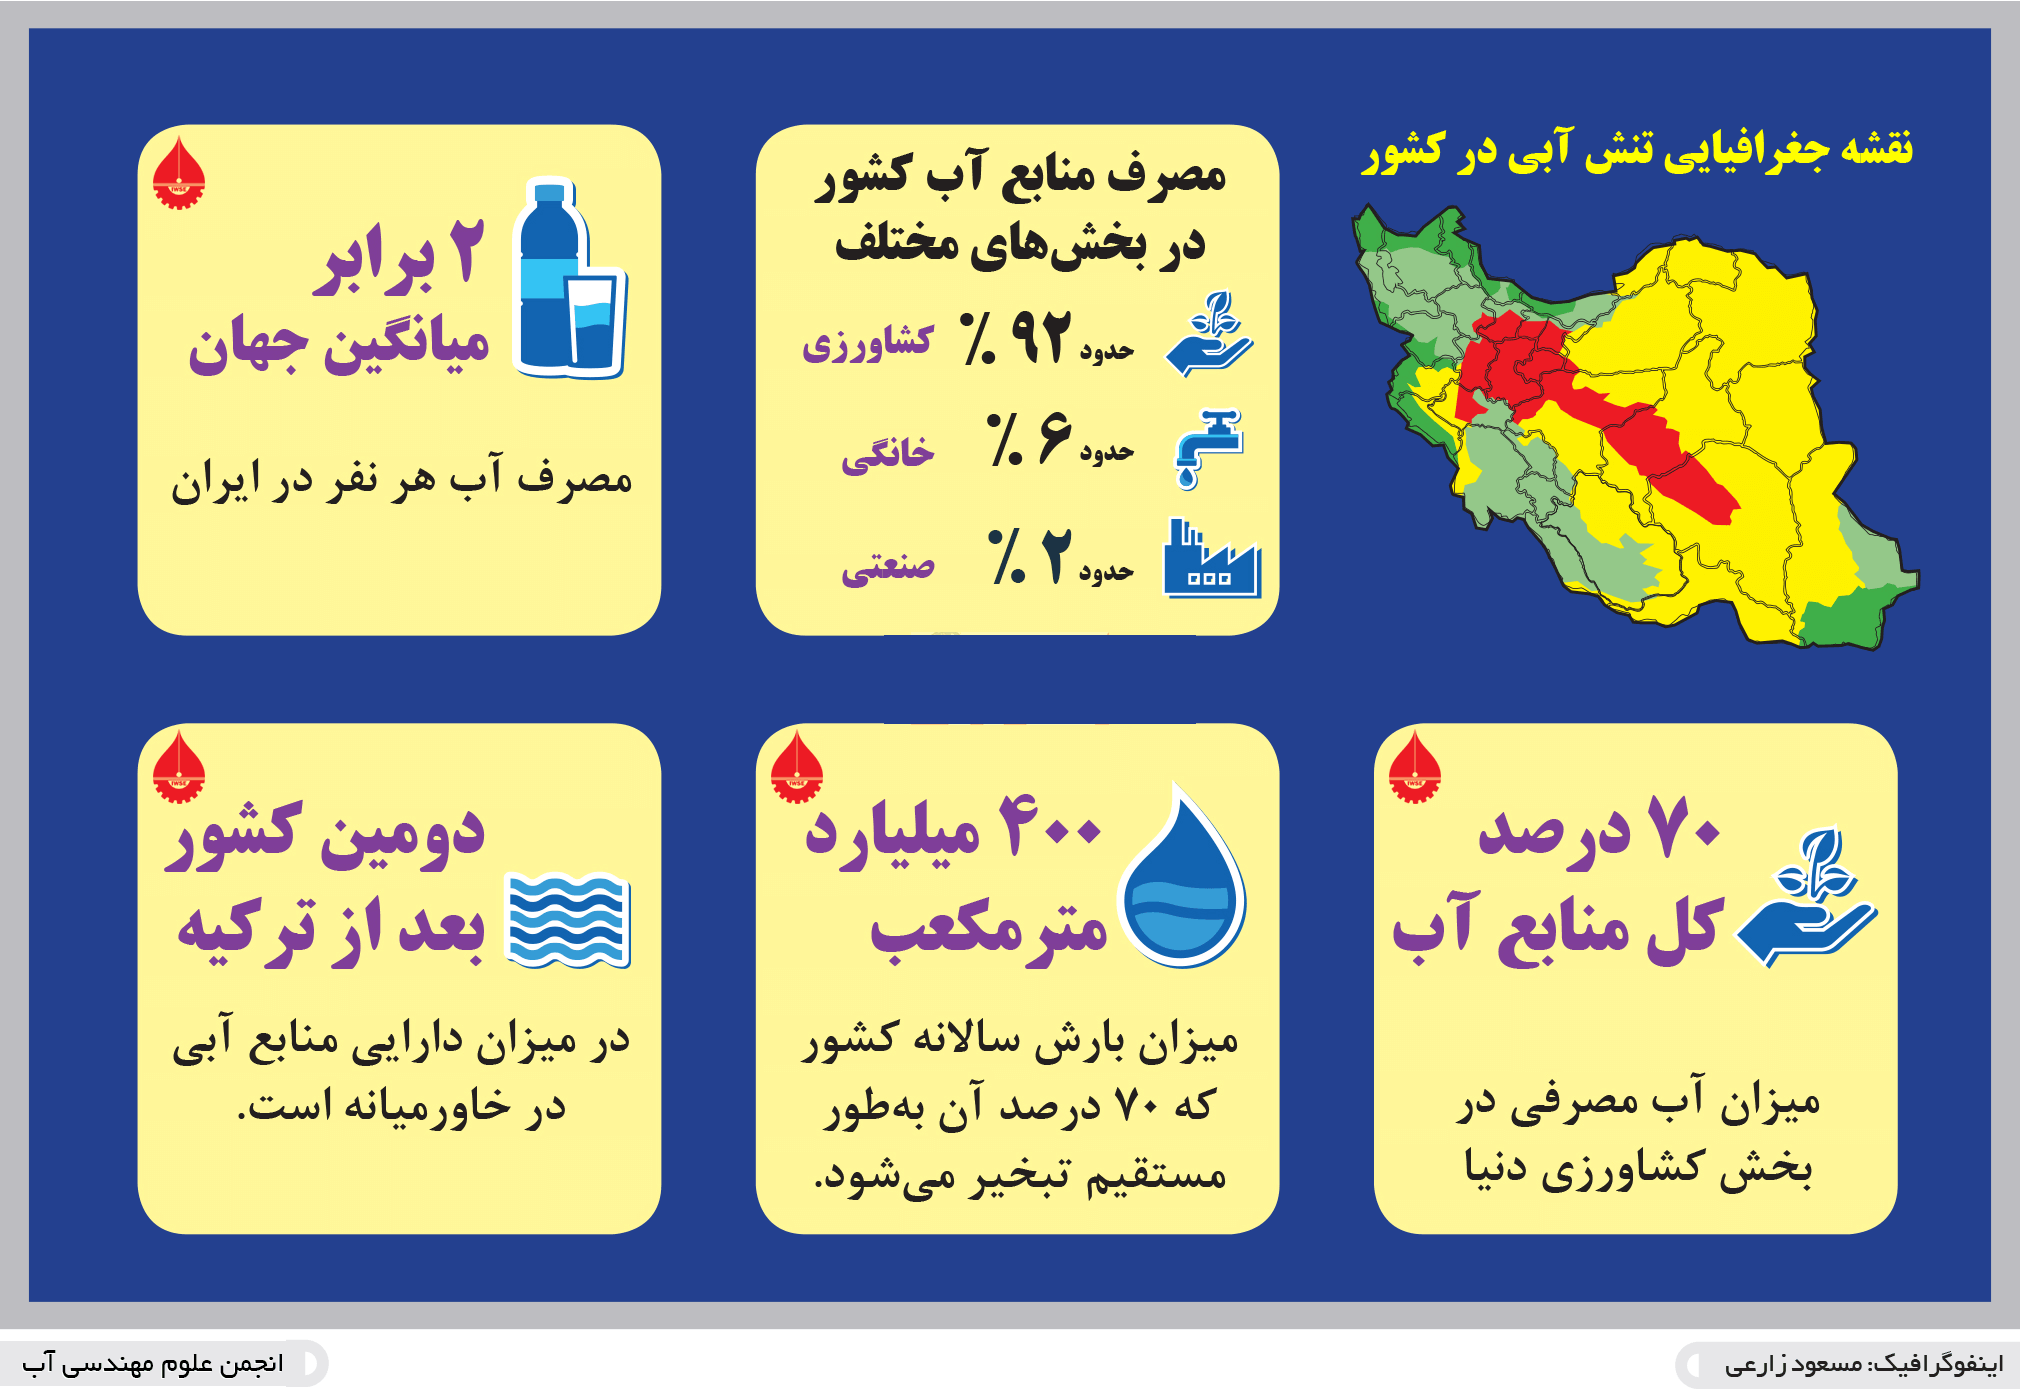 تنش آبی در ایران [+ نقشه جغرافیایی ] | آبتک